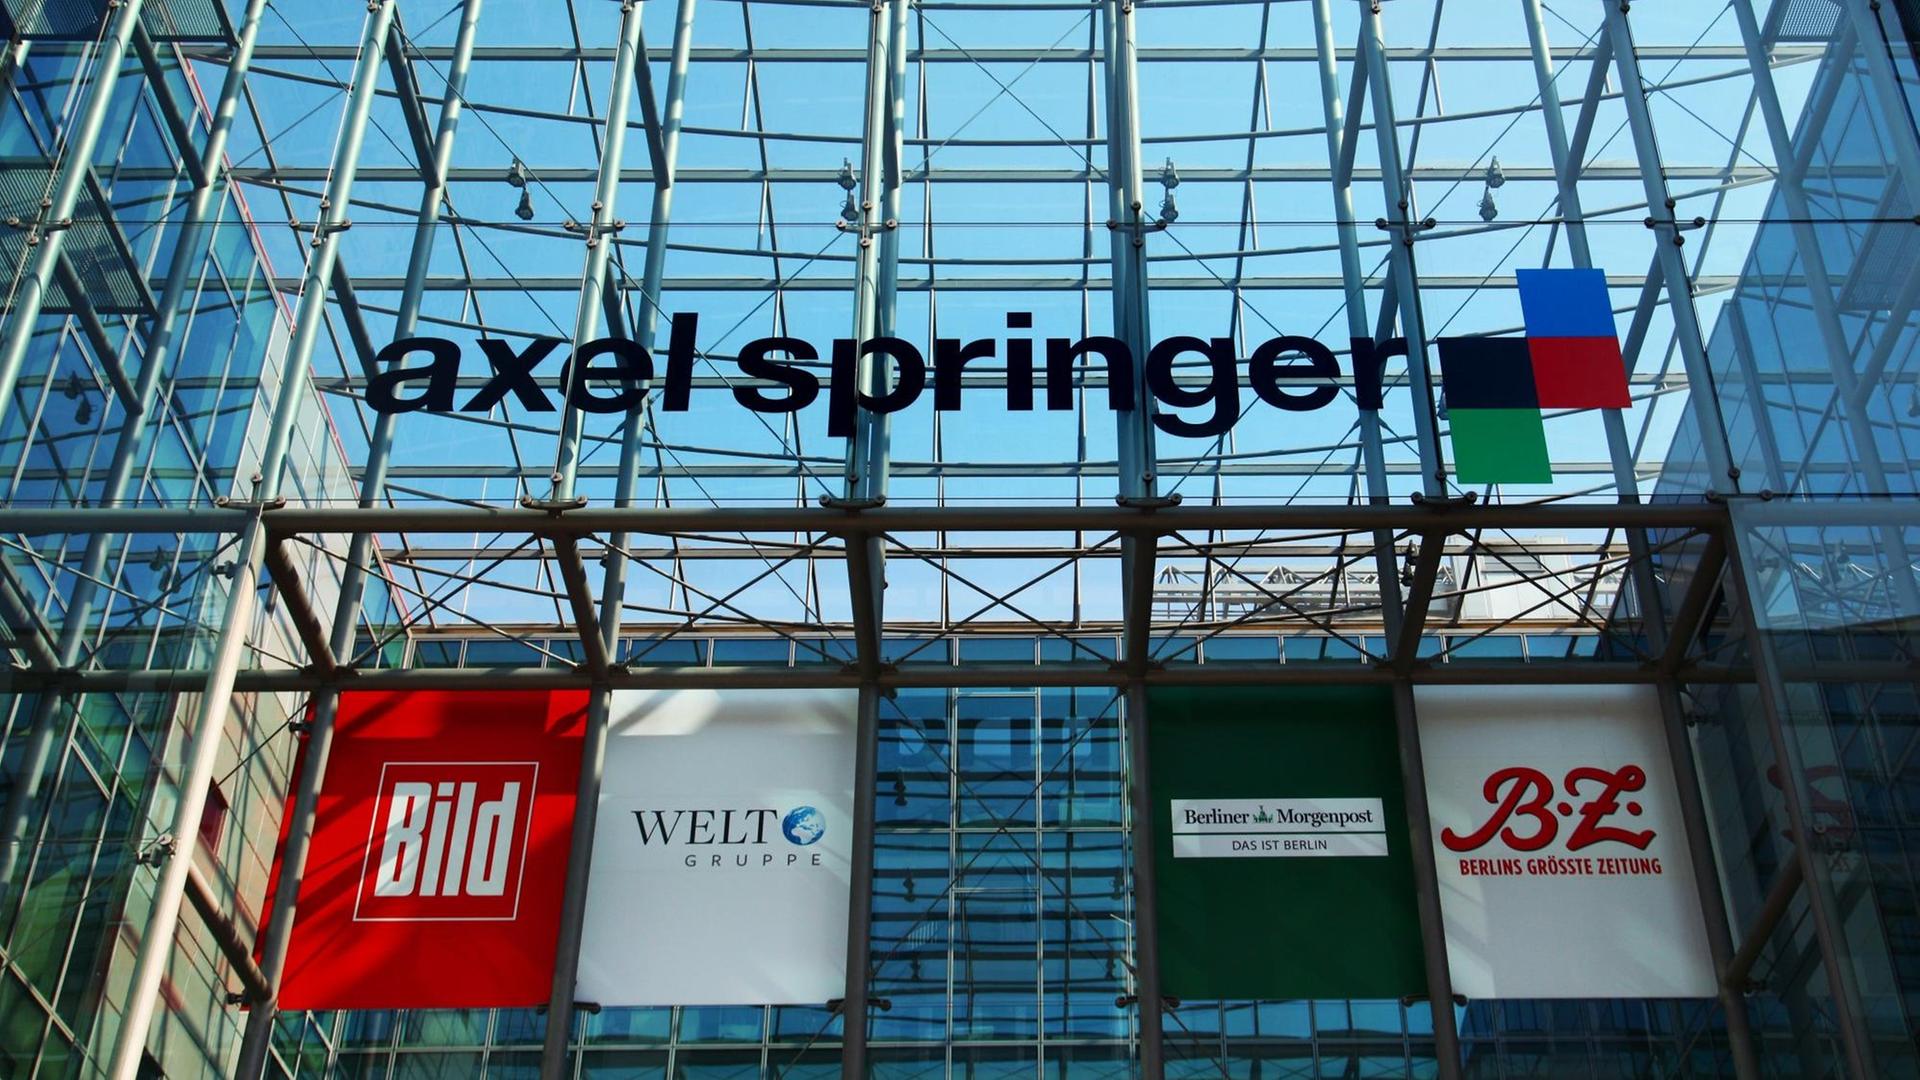 An einem Gebäude der Axel Springer AG hängen Banner, die für Bild, die Welt-Gruppe, die B.Z., und die Berliner Morgenpost werben.